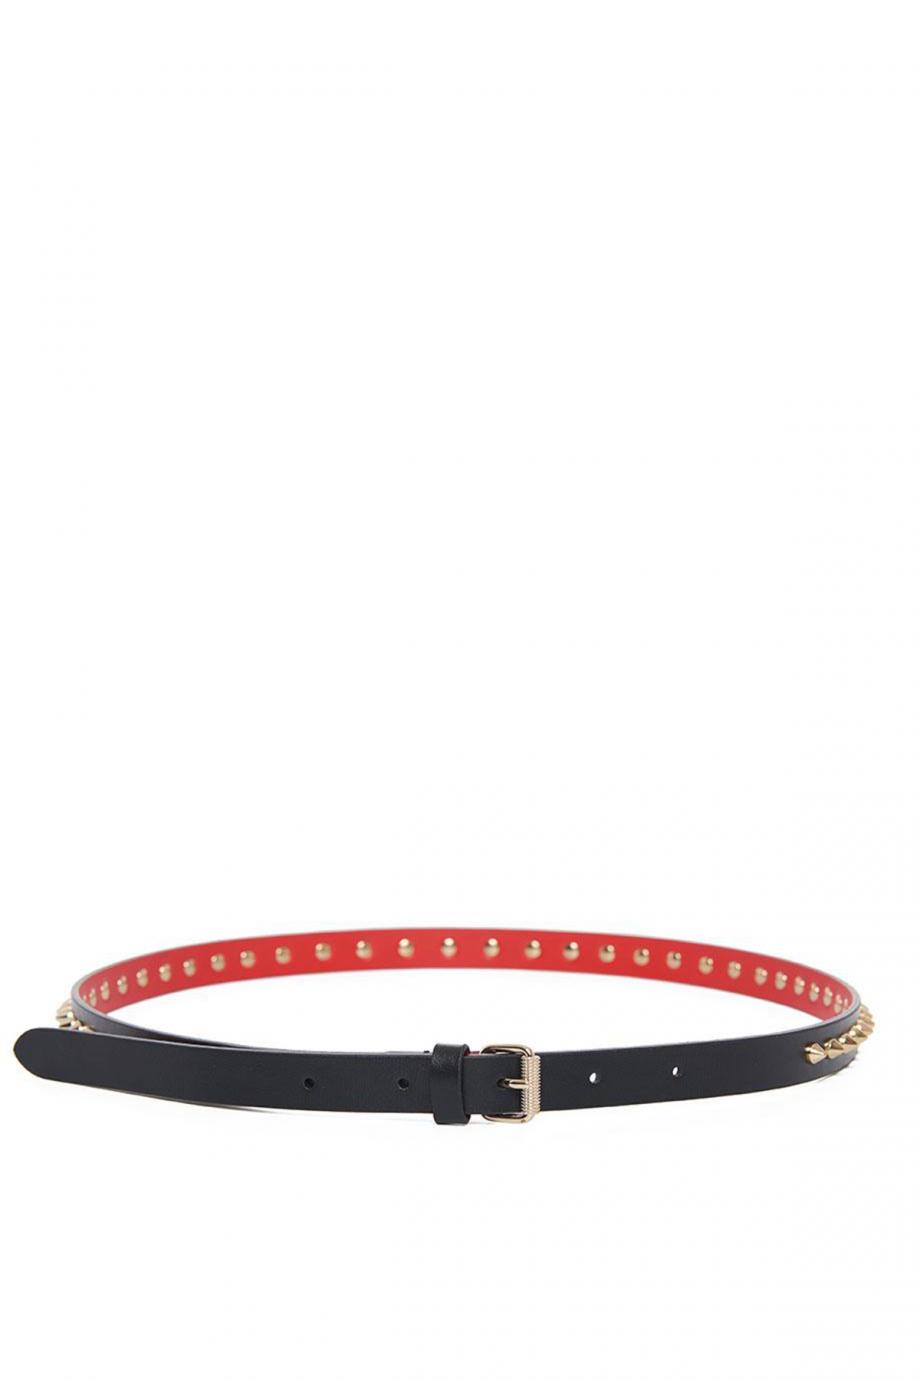 Loubispikes embellished leather belt